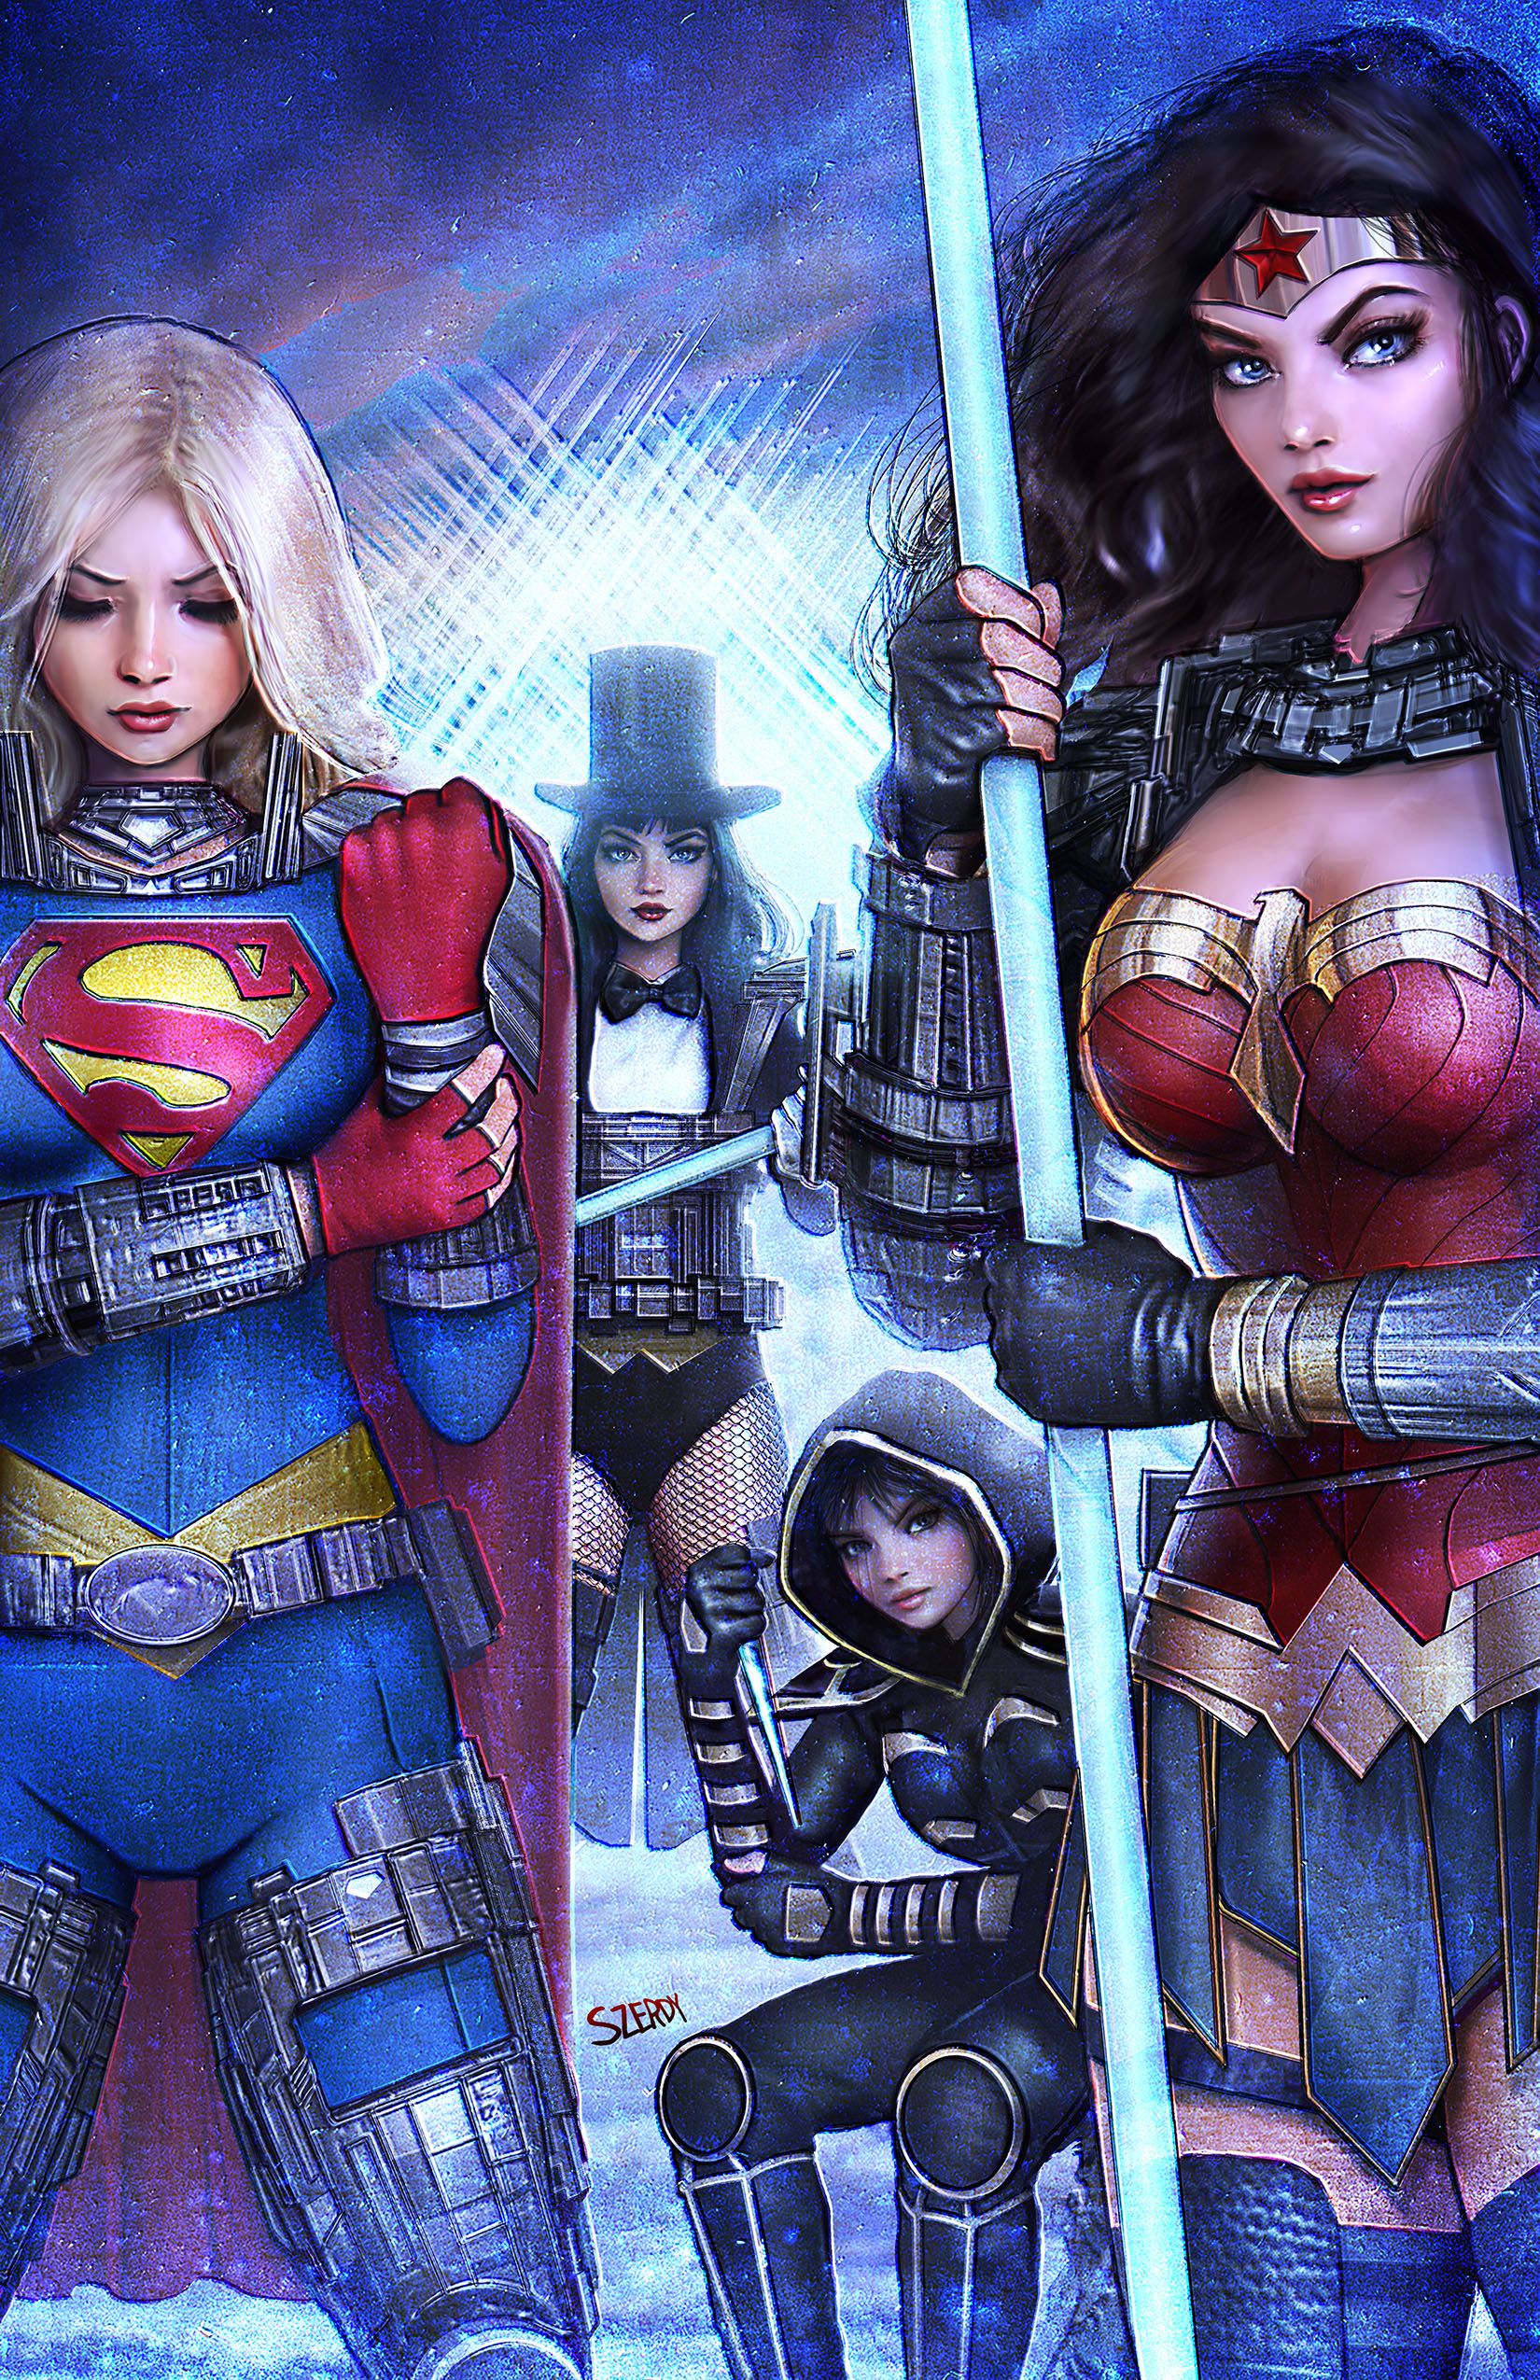 Capa variante de Absolute Power 2 Szerdy: Supergirl, Zatanna, Cassandra Cain e Mulher Maravilha em novas armaduras.